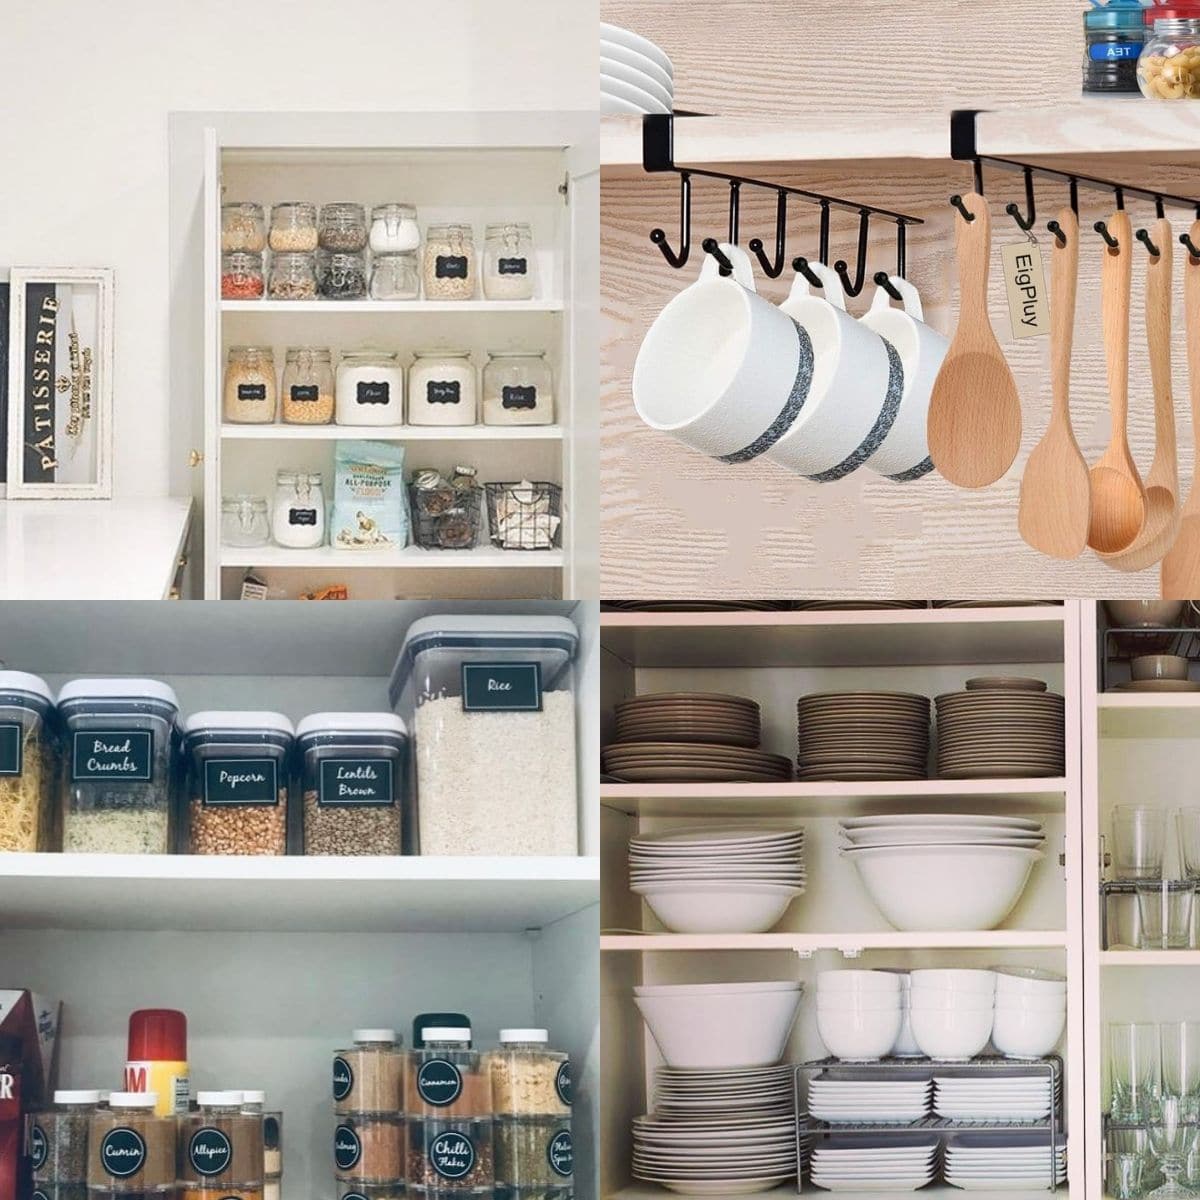 18 Genius Ways to Organize Kitchen Cabinets   Craftsy Hacks